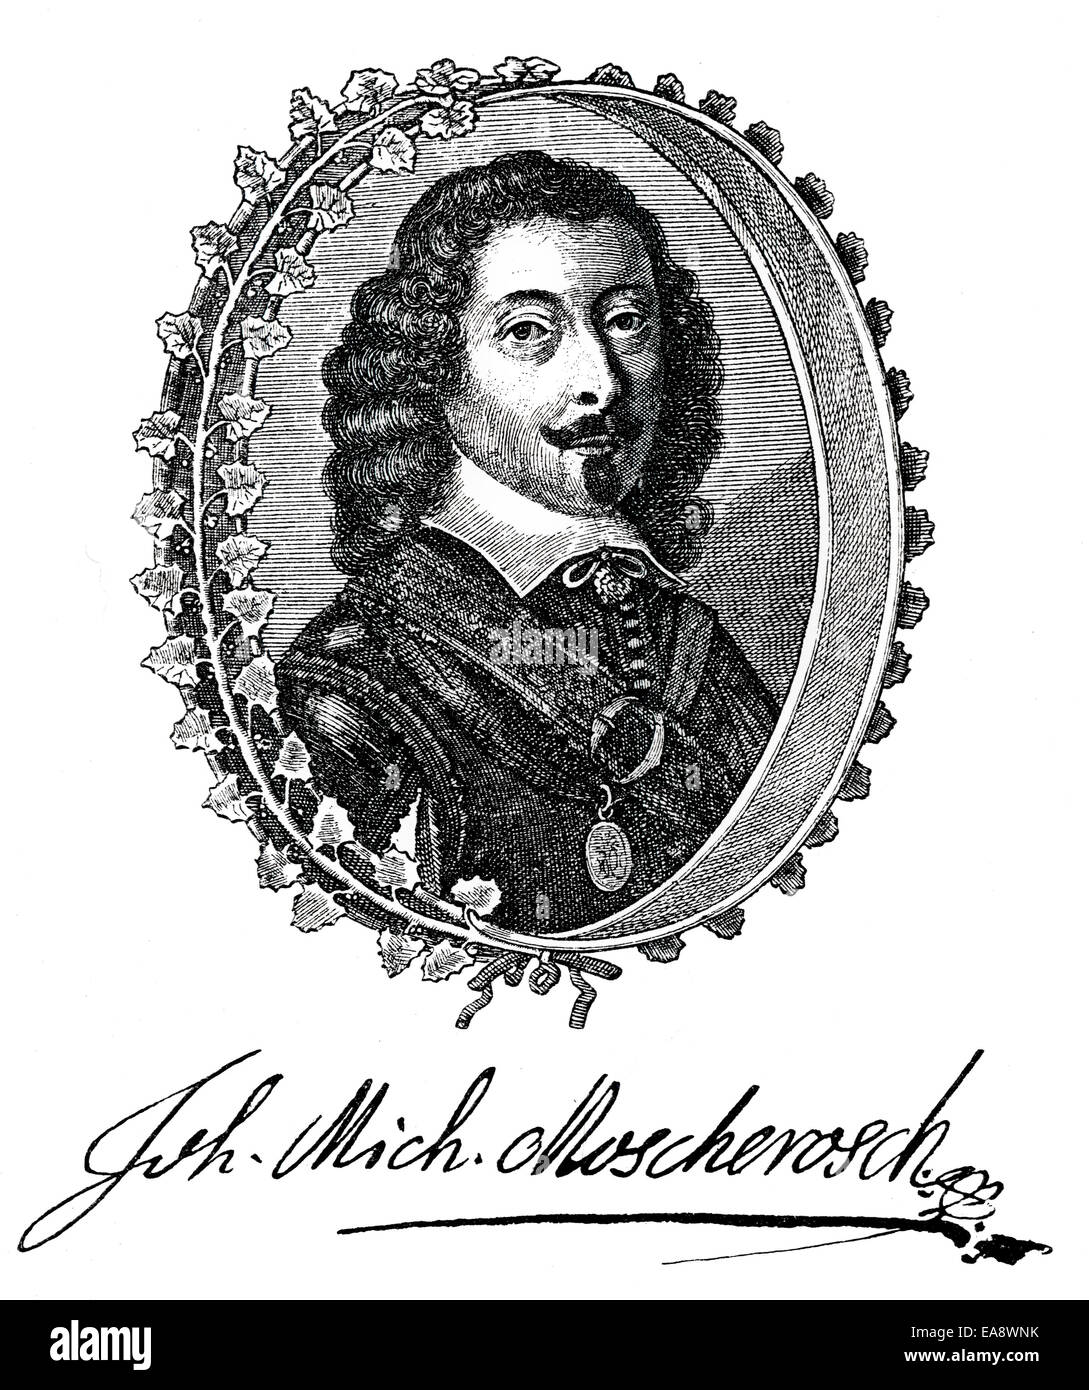 Johann Michael Moscherosch, 1601 - 1669, a German statesman, satirist and teacher of the baroque period, Johann Michael Moschero Stock Photo